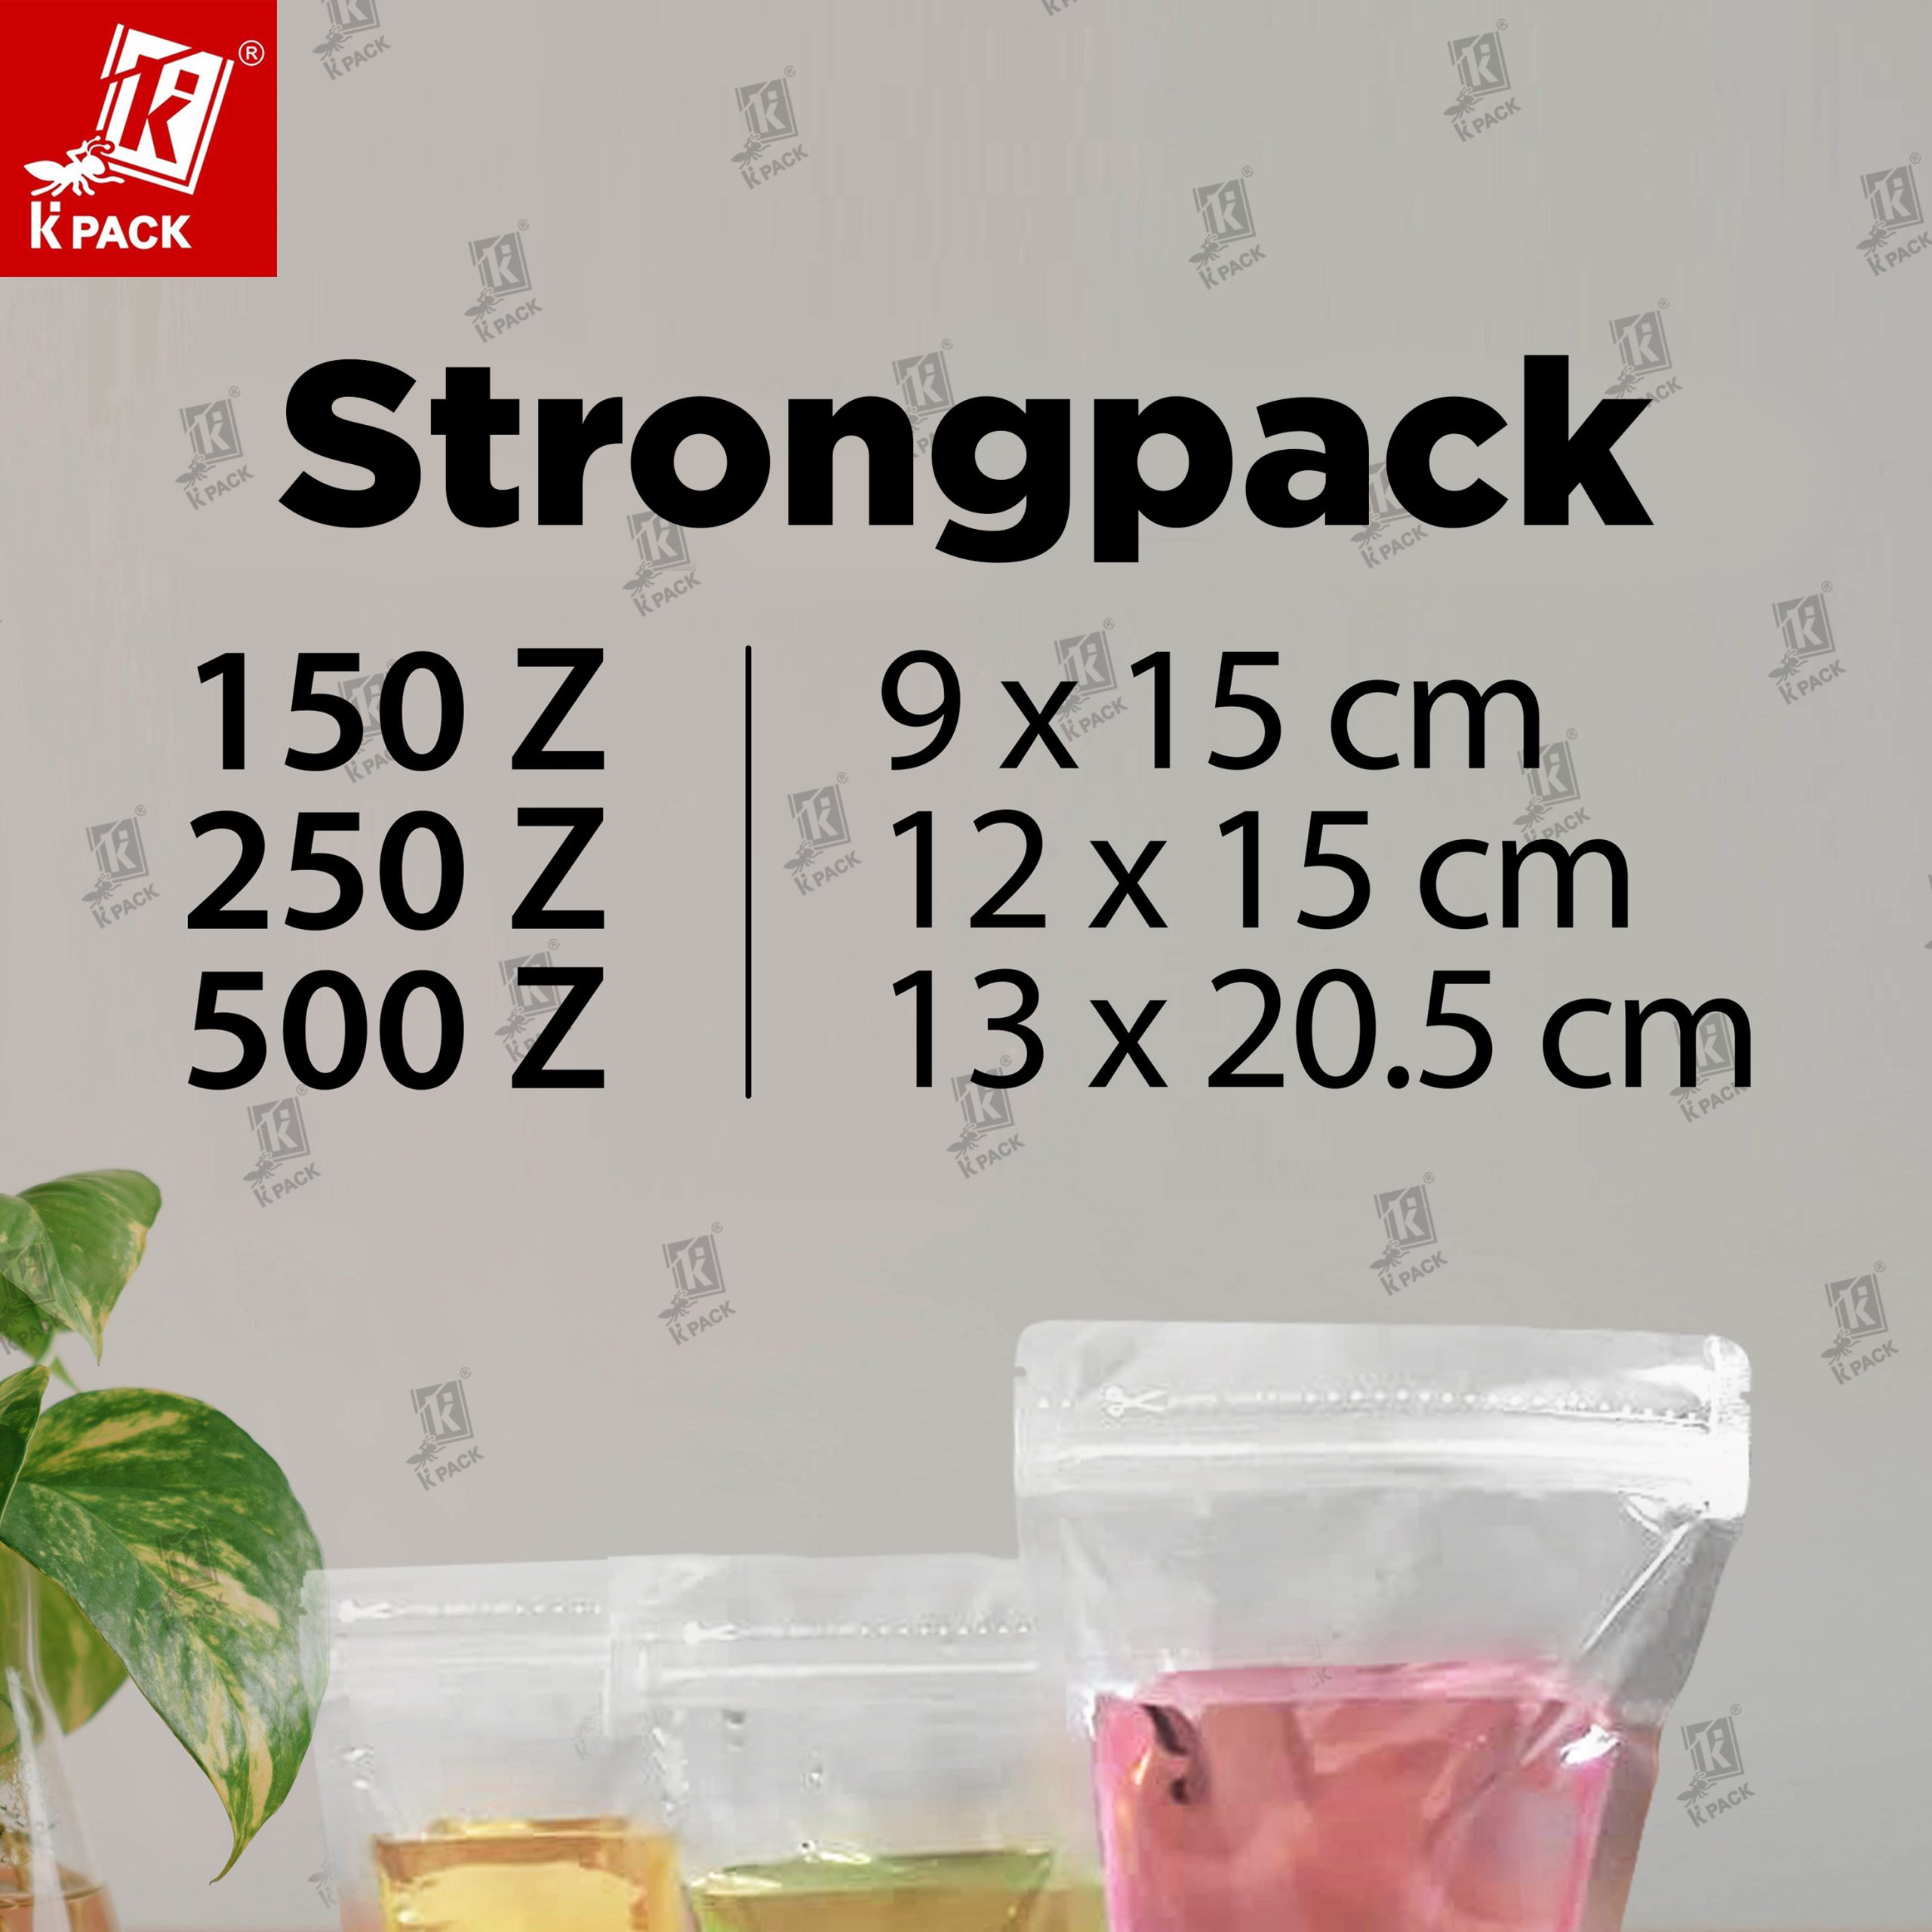 Strongpack ukuran 1.1